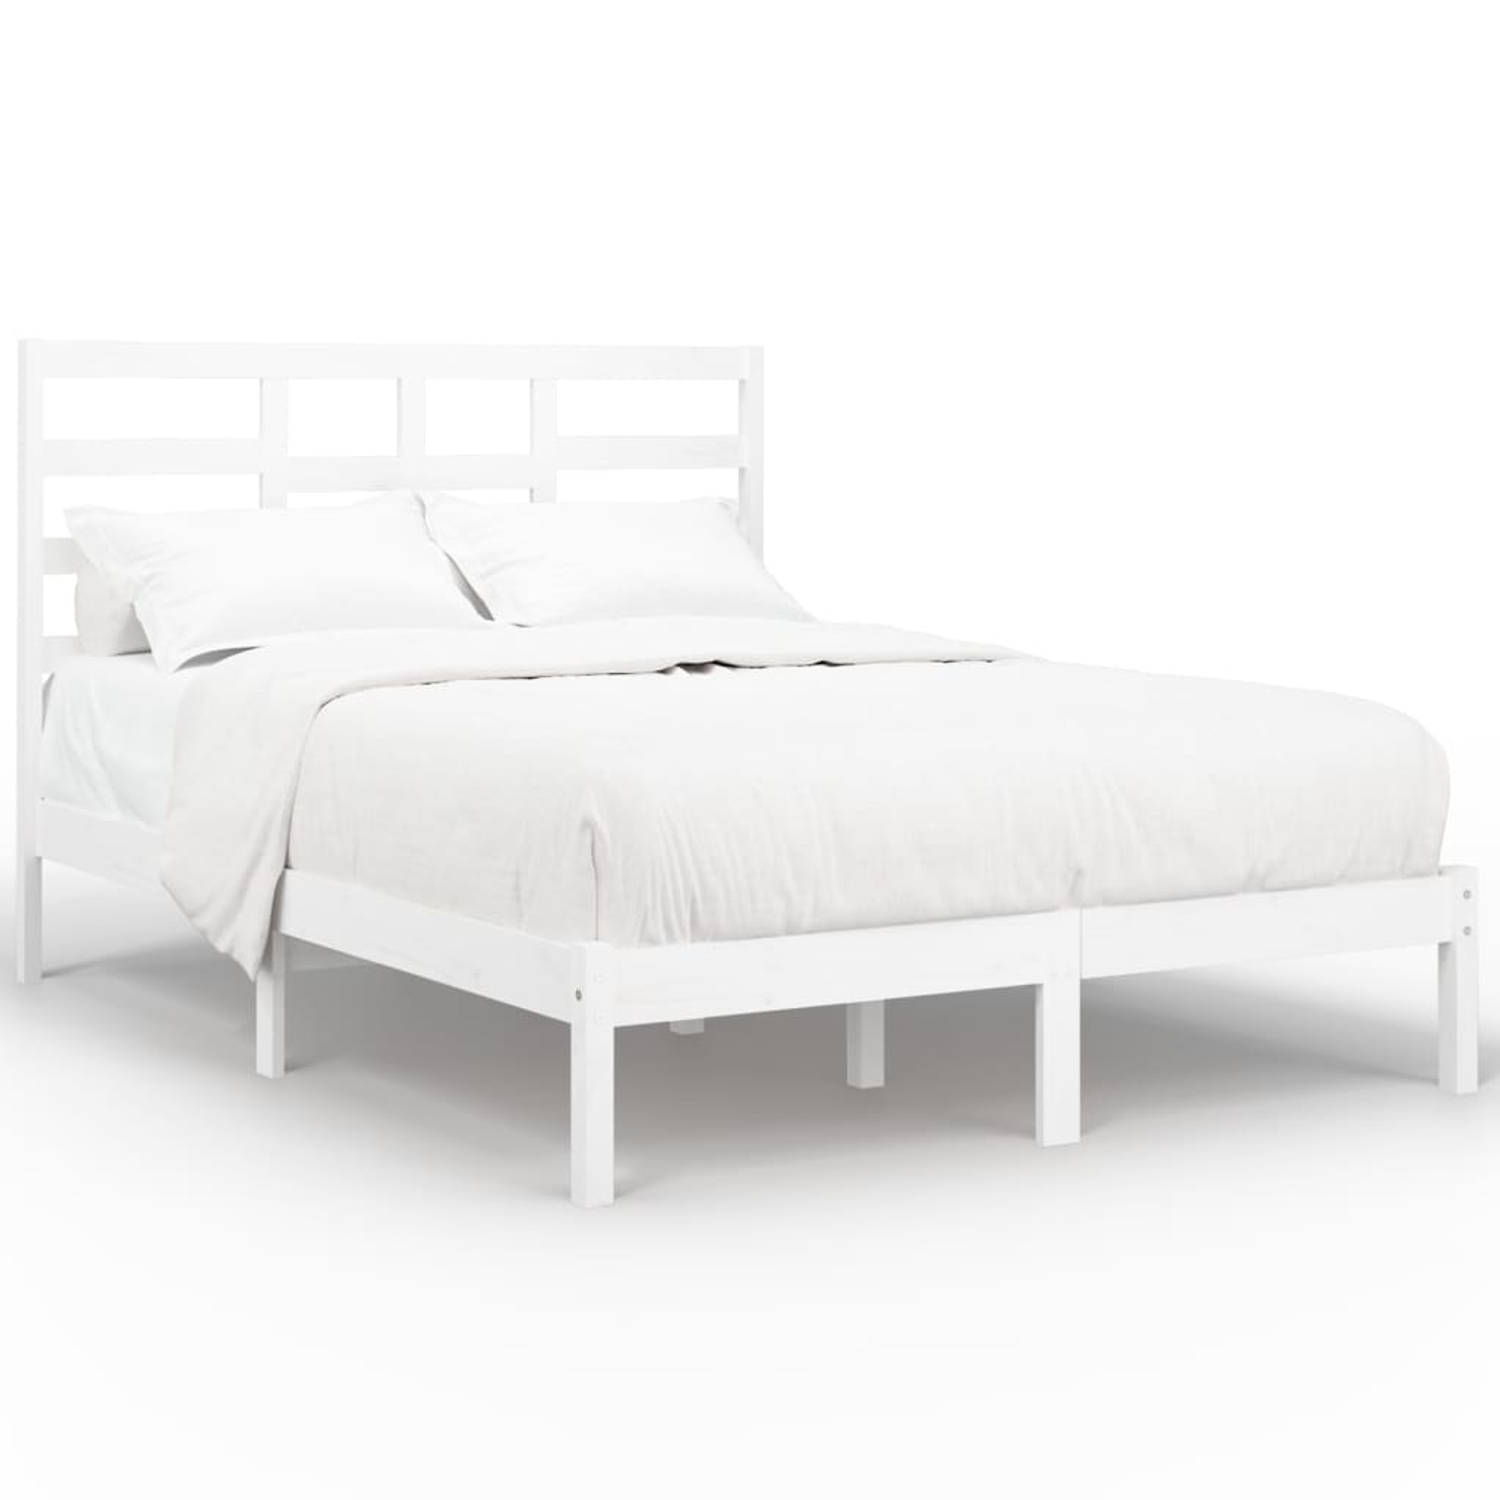 The Living Store Bedframe massief hout wit 140x200 cm - Bedframe - Bedframes - Bed - Bedbodem - Ledikant - Bed Frame - Massief Houten Bedframe - Slaapmeubel - Tweepersoonsbed - Bed